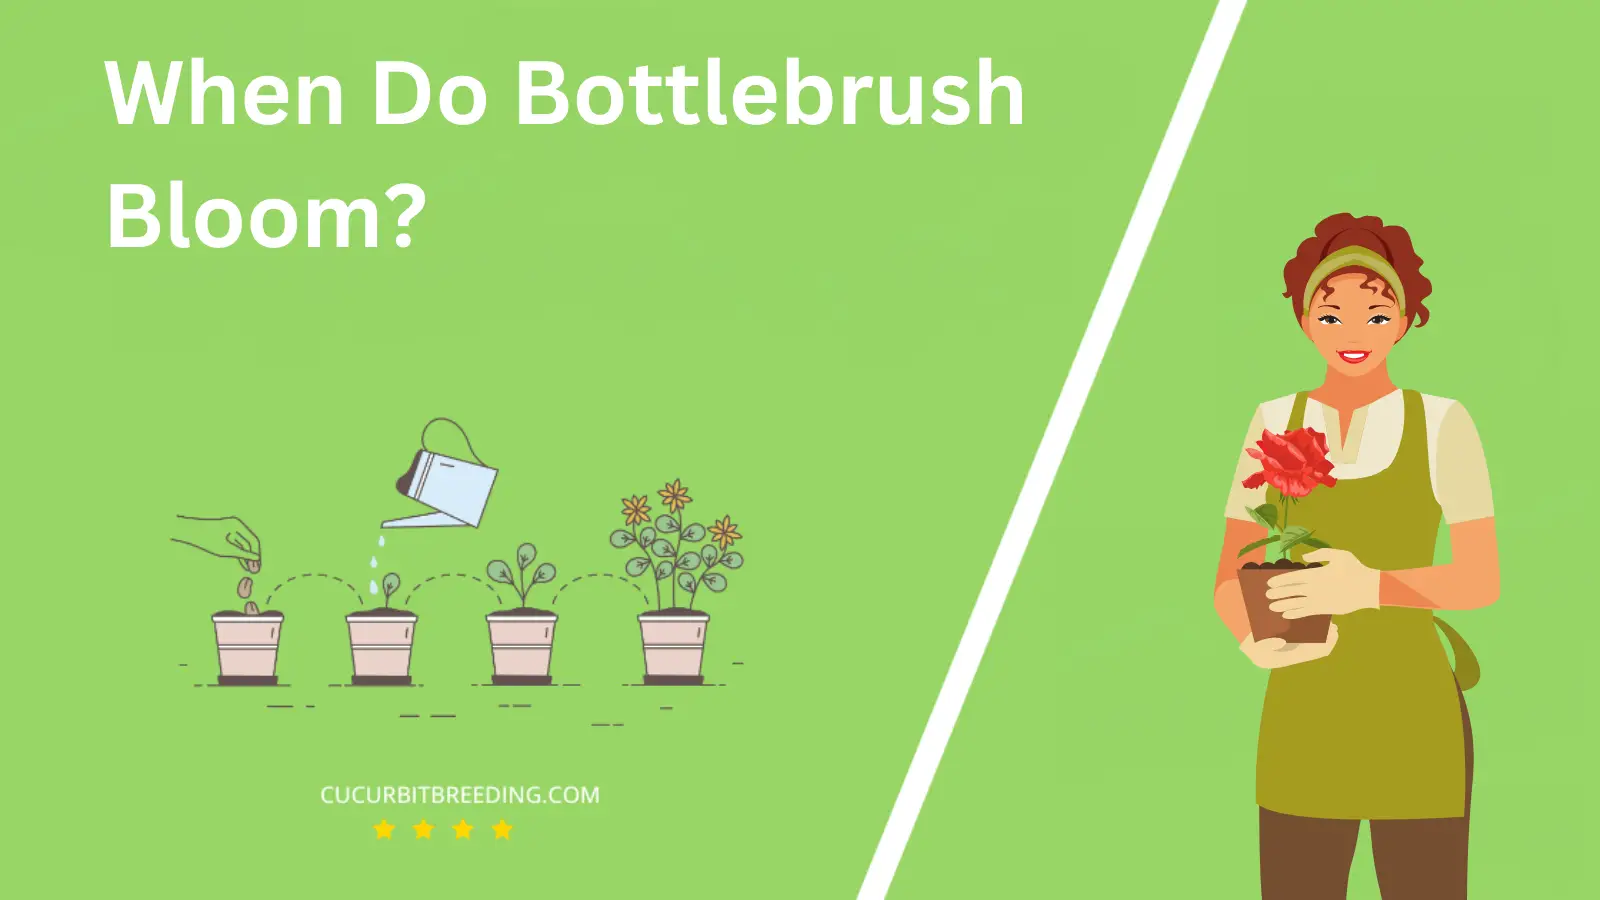 When Do Bottlebrush Bloom?